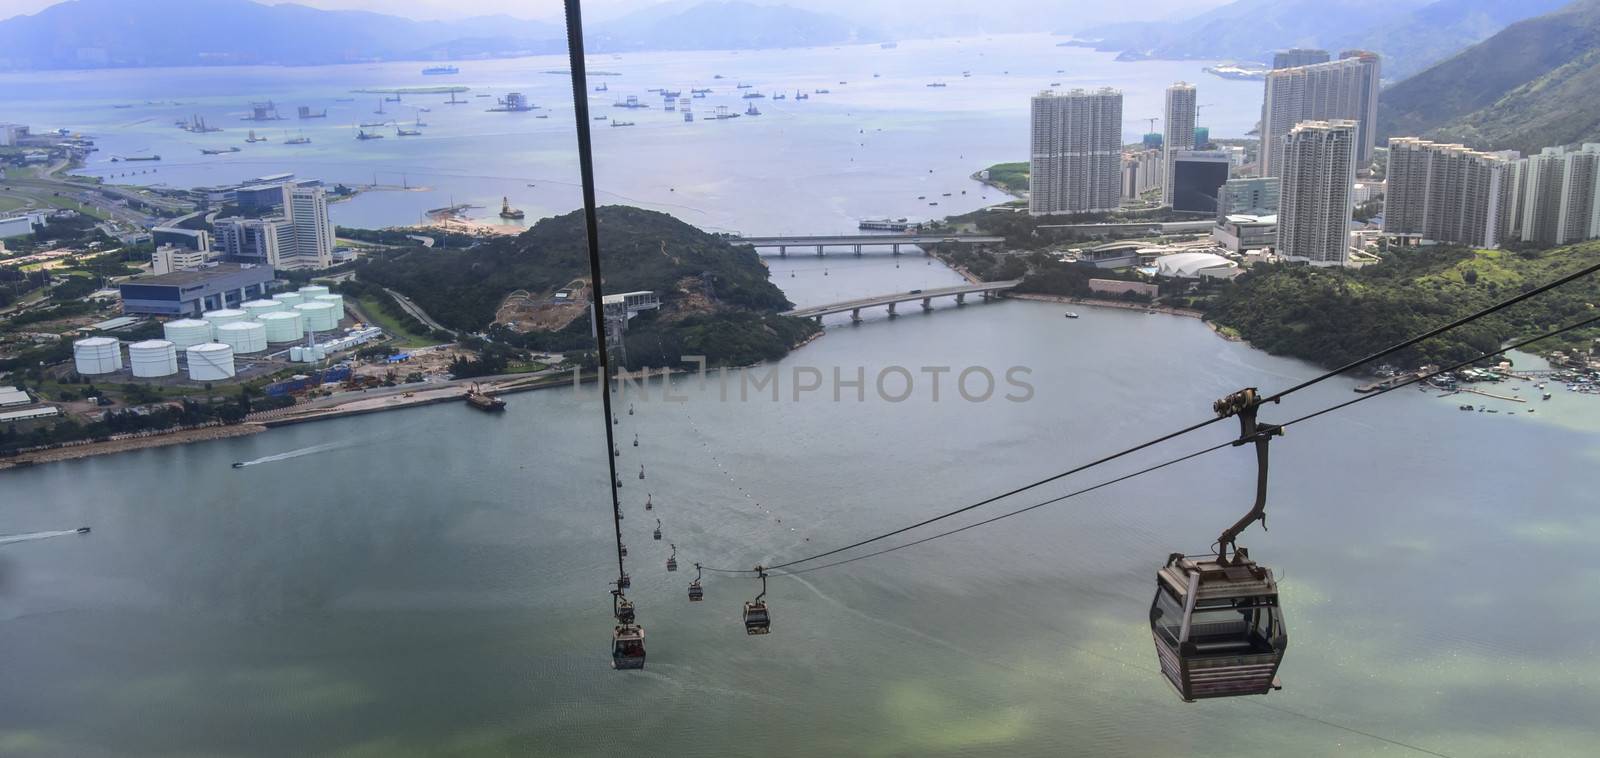 aerial view from cable car at lantau island hong kong